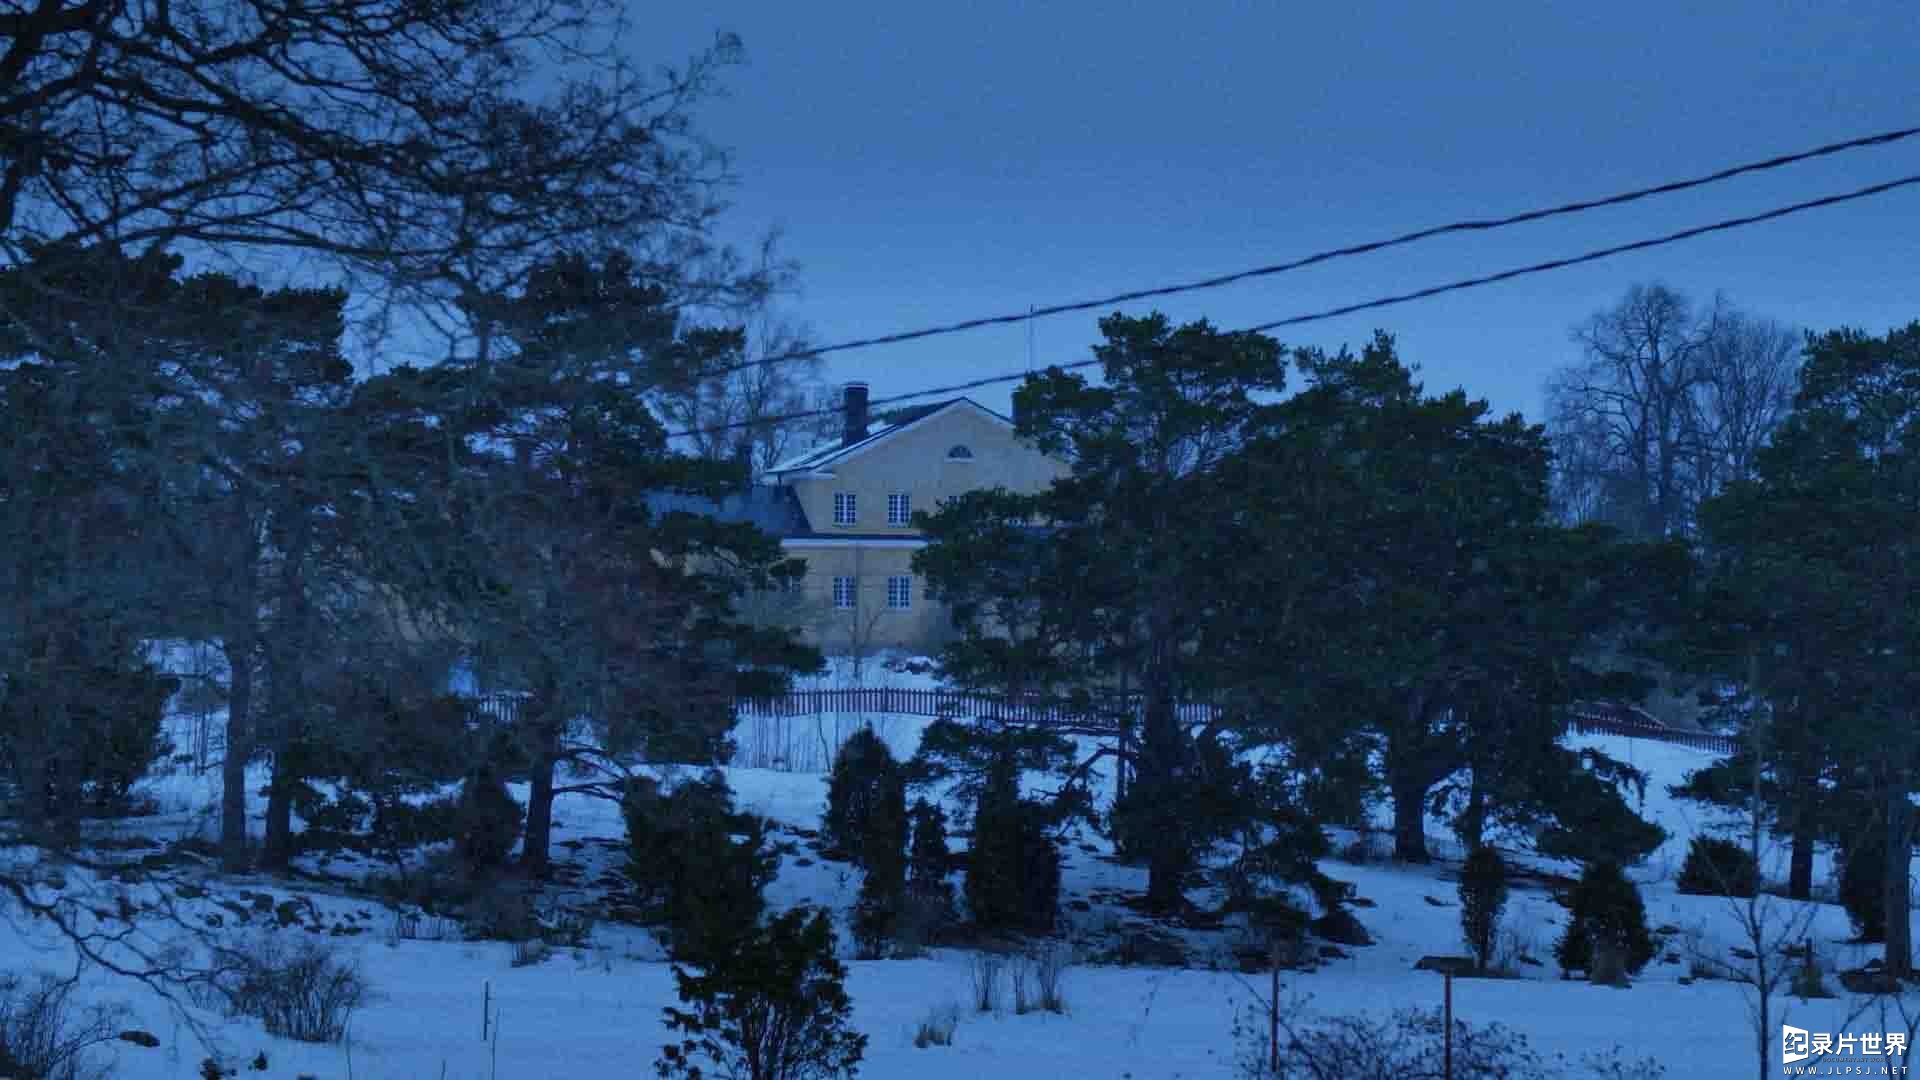 芬兰纪录片《灵魂之岛 Själö: Island of Souls 2020》全1集